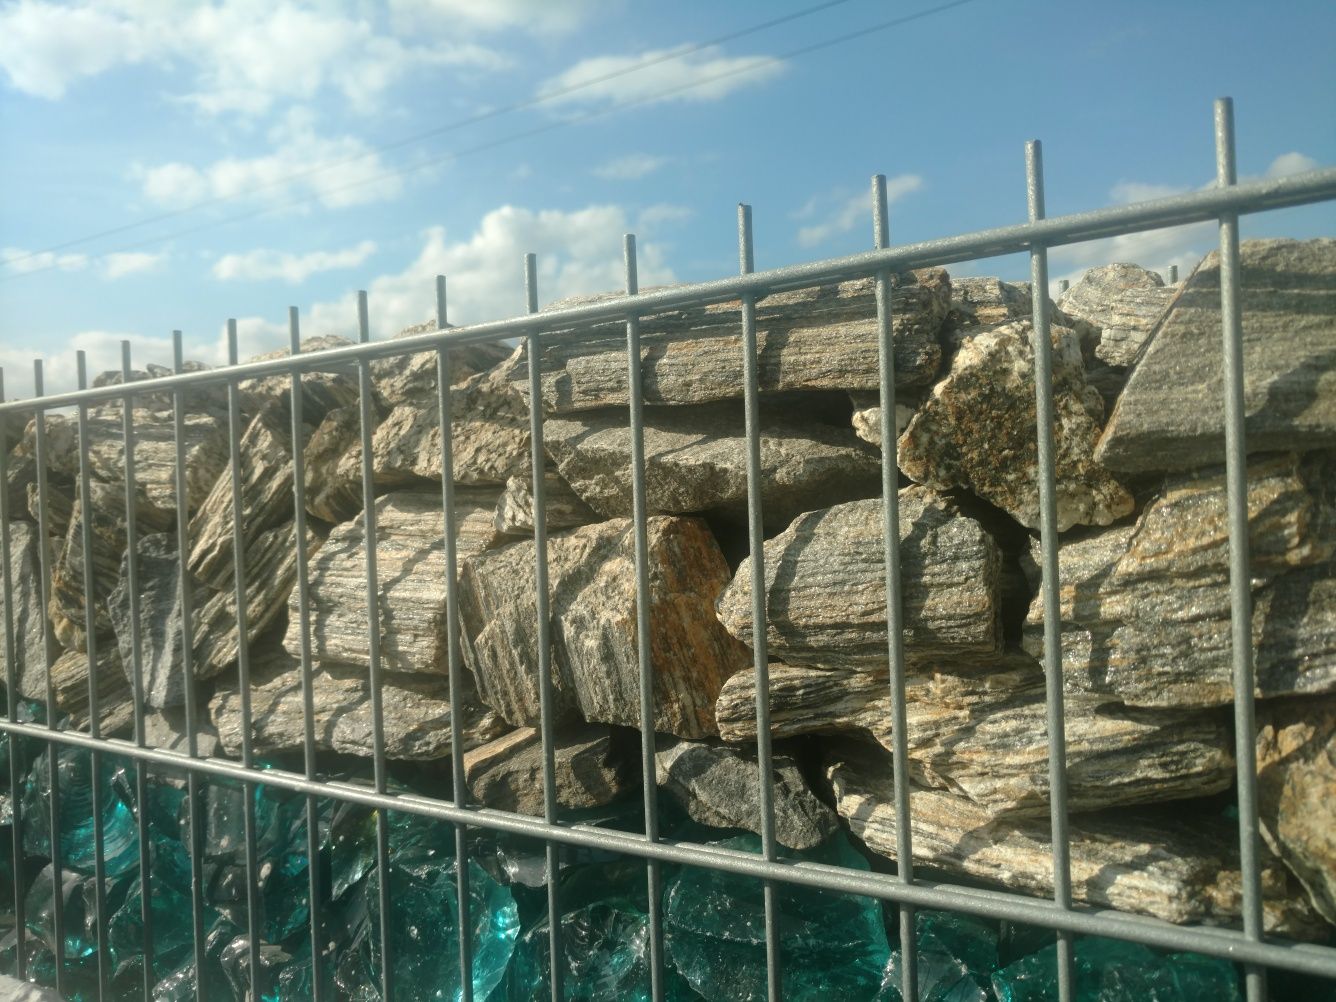 Kamień Alpejski grafitowy do ogrodzeń gabionowych gabionów gabionowy